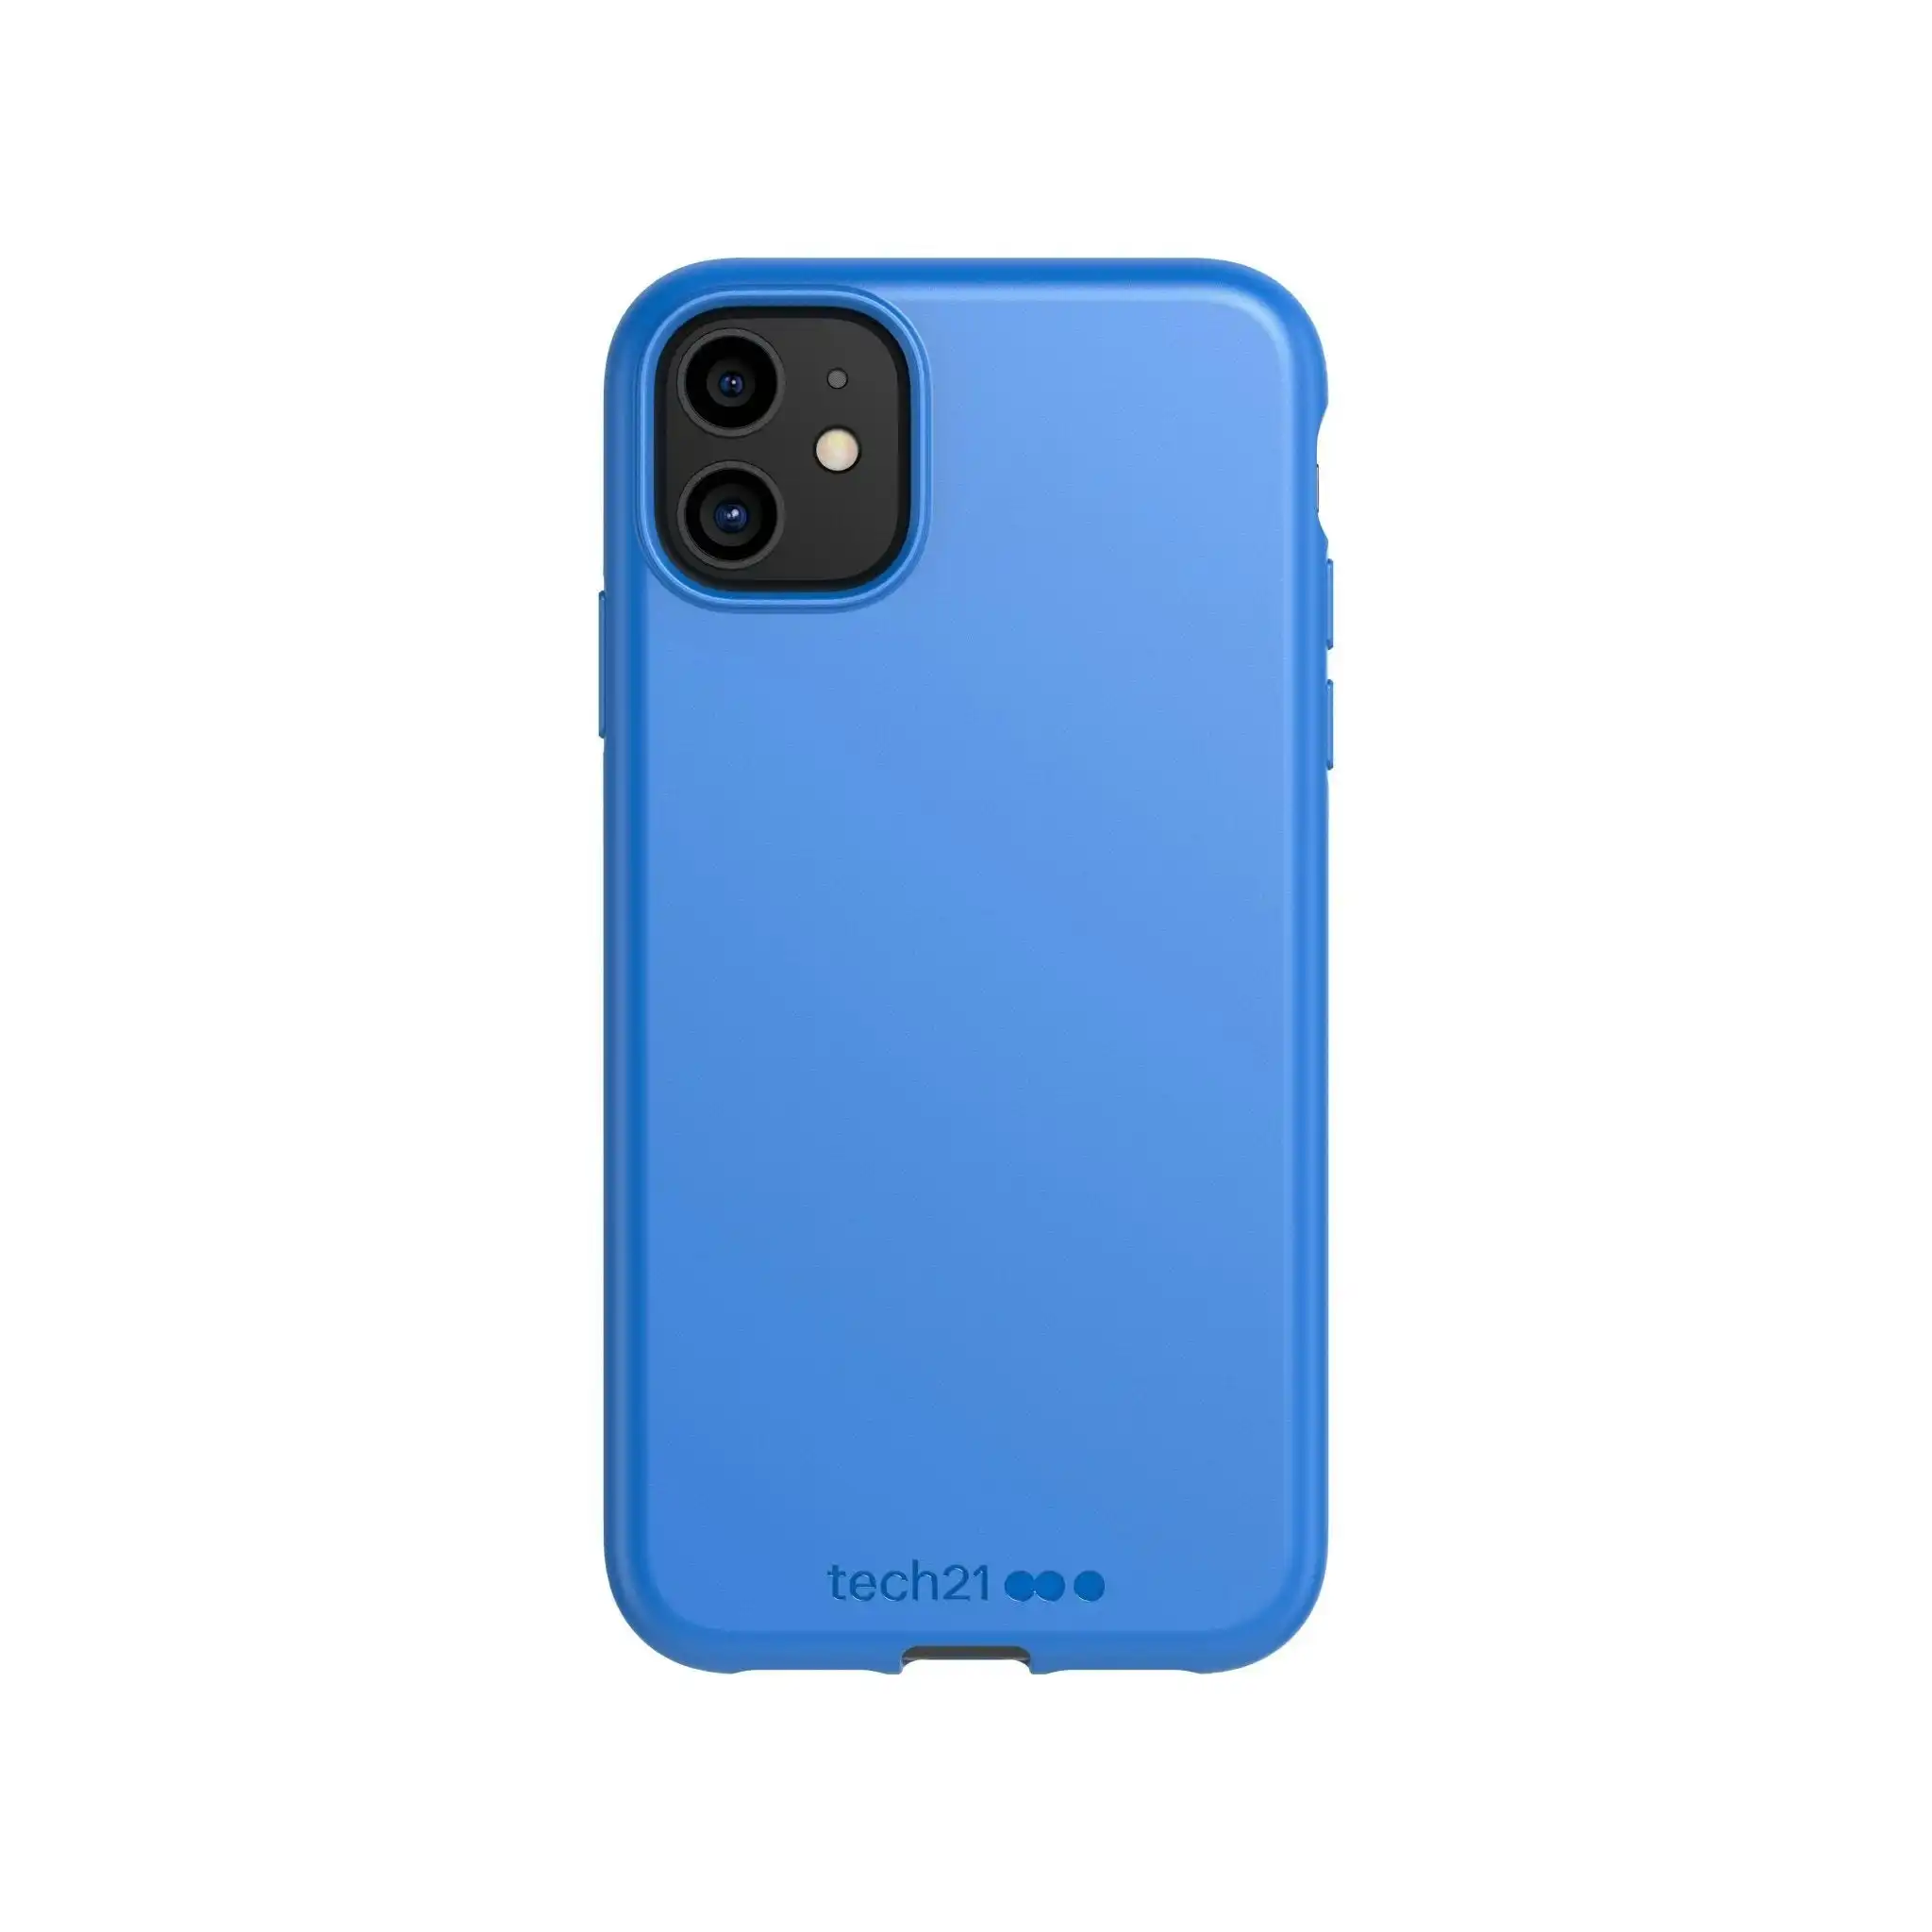 Tech21 Studio Colour Phone Case for iPhone 11 - BLUE